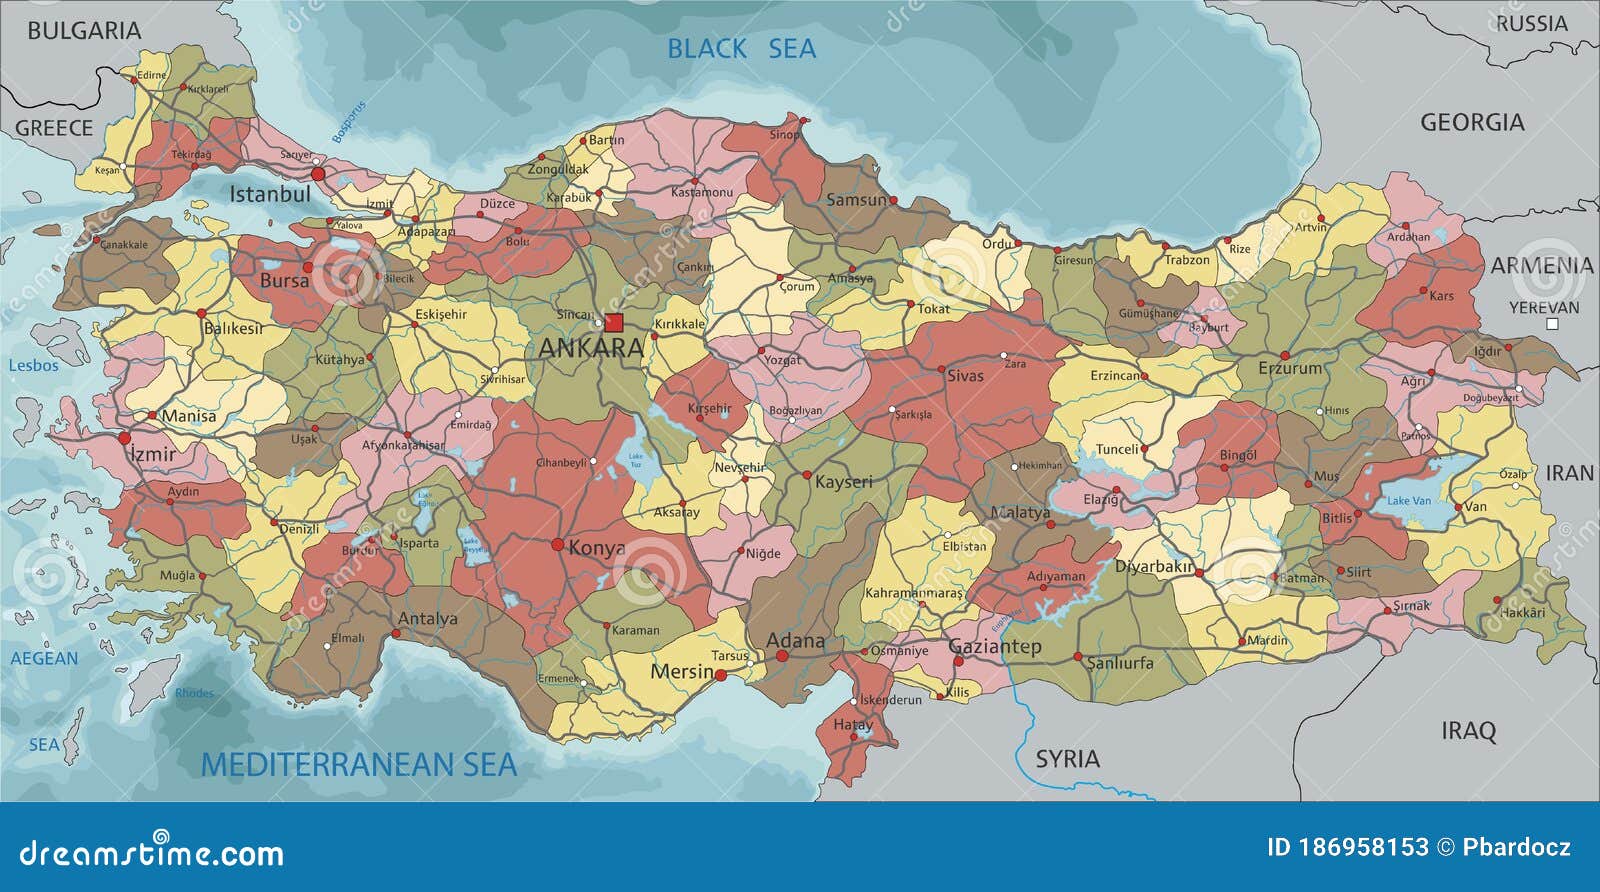 土耳其交通地图 - 土耳其地图 - 地理教师网